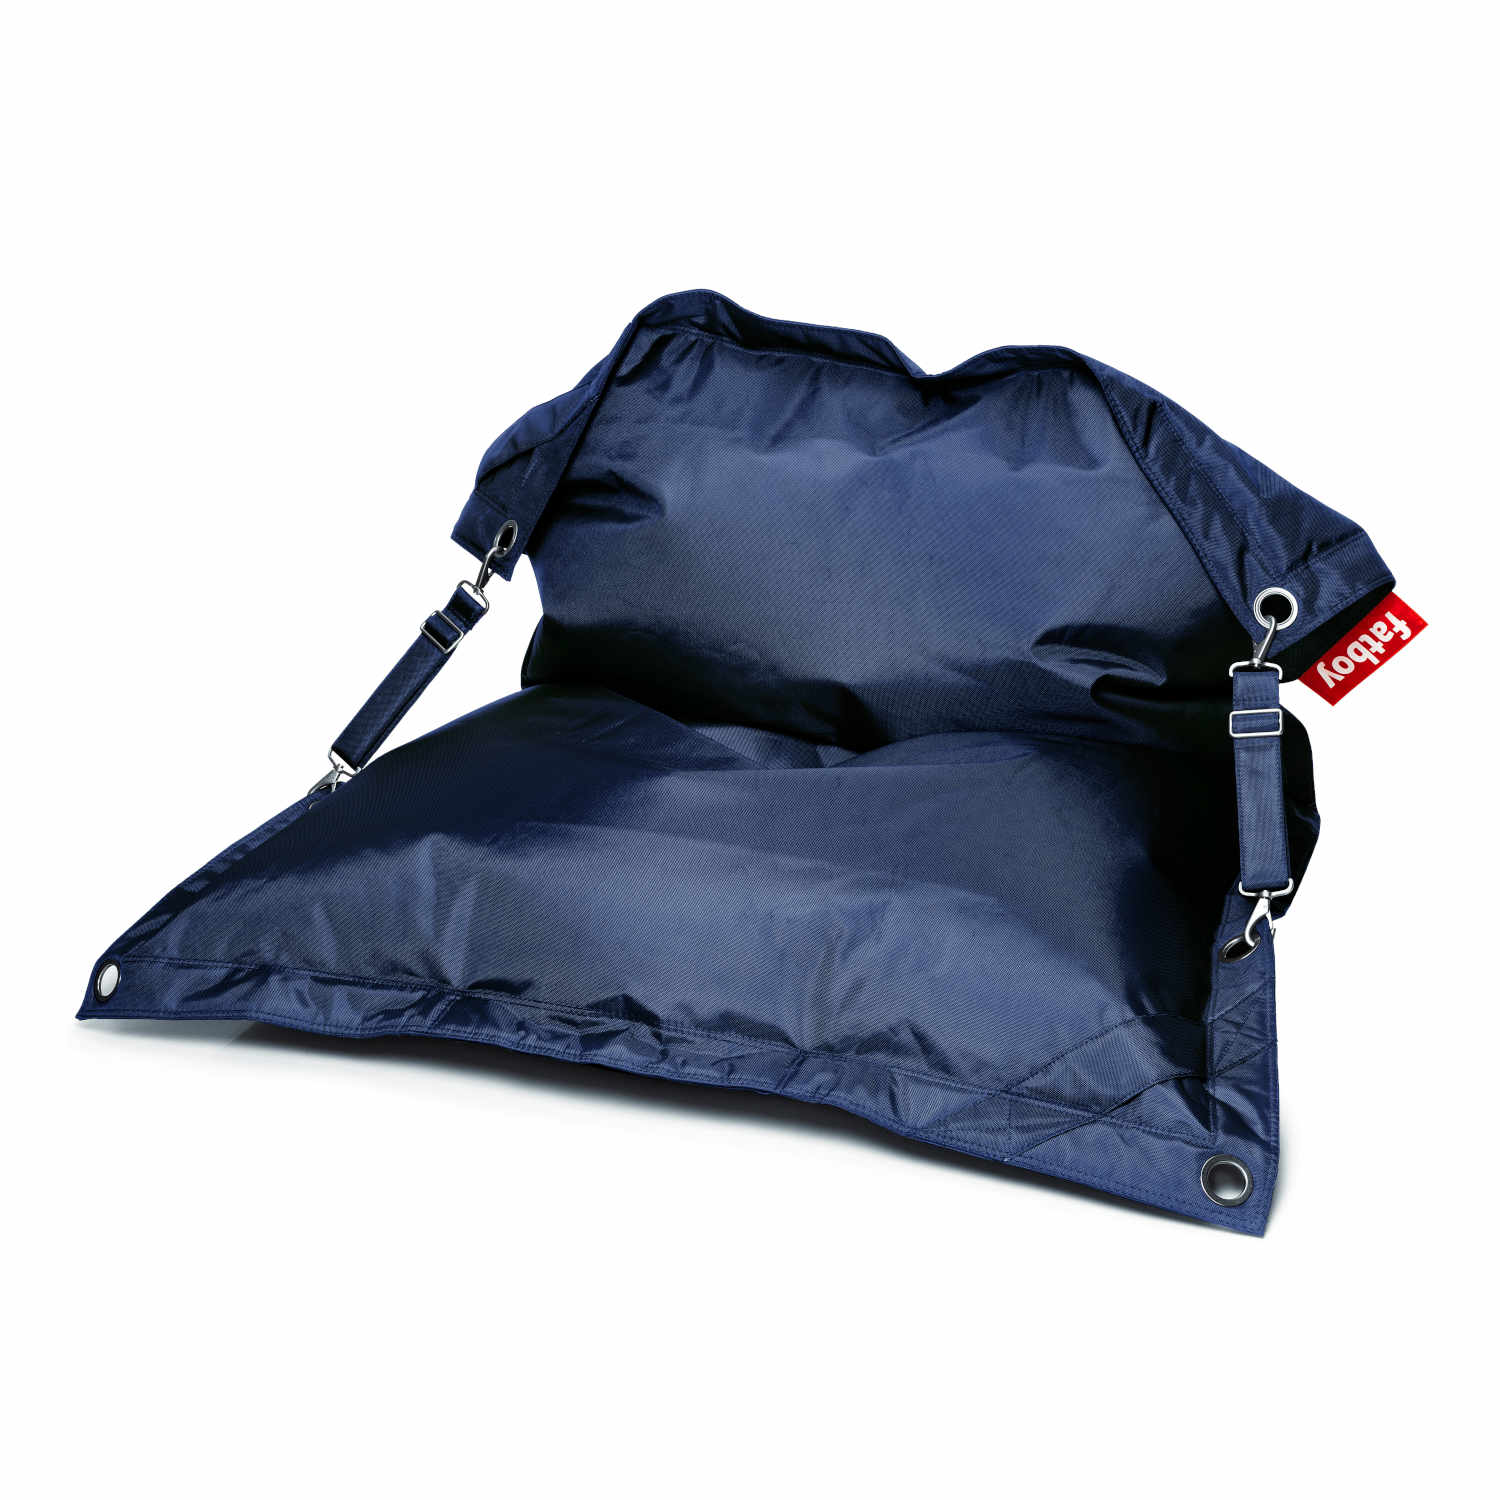 Buggle-Up Sitzsack, Farbe dark blue von Fatboy